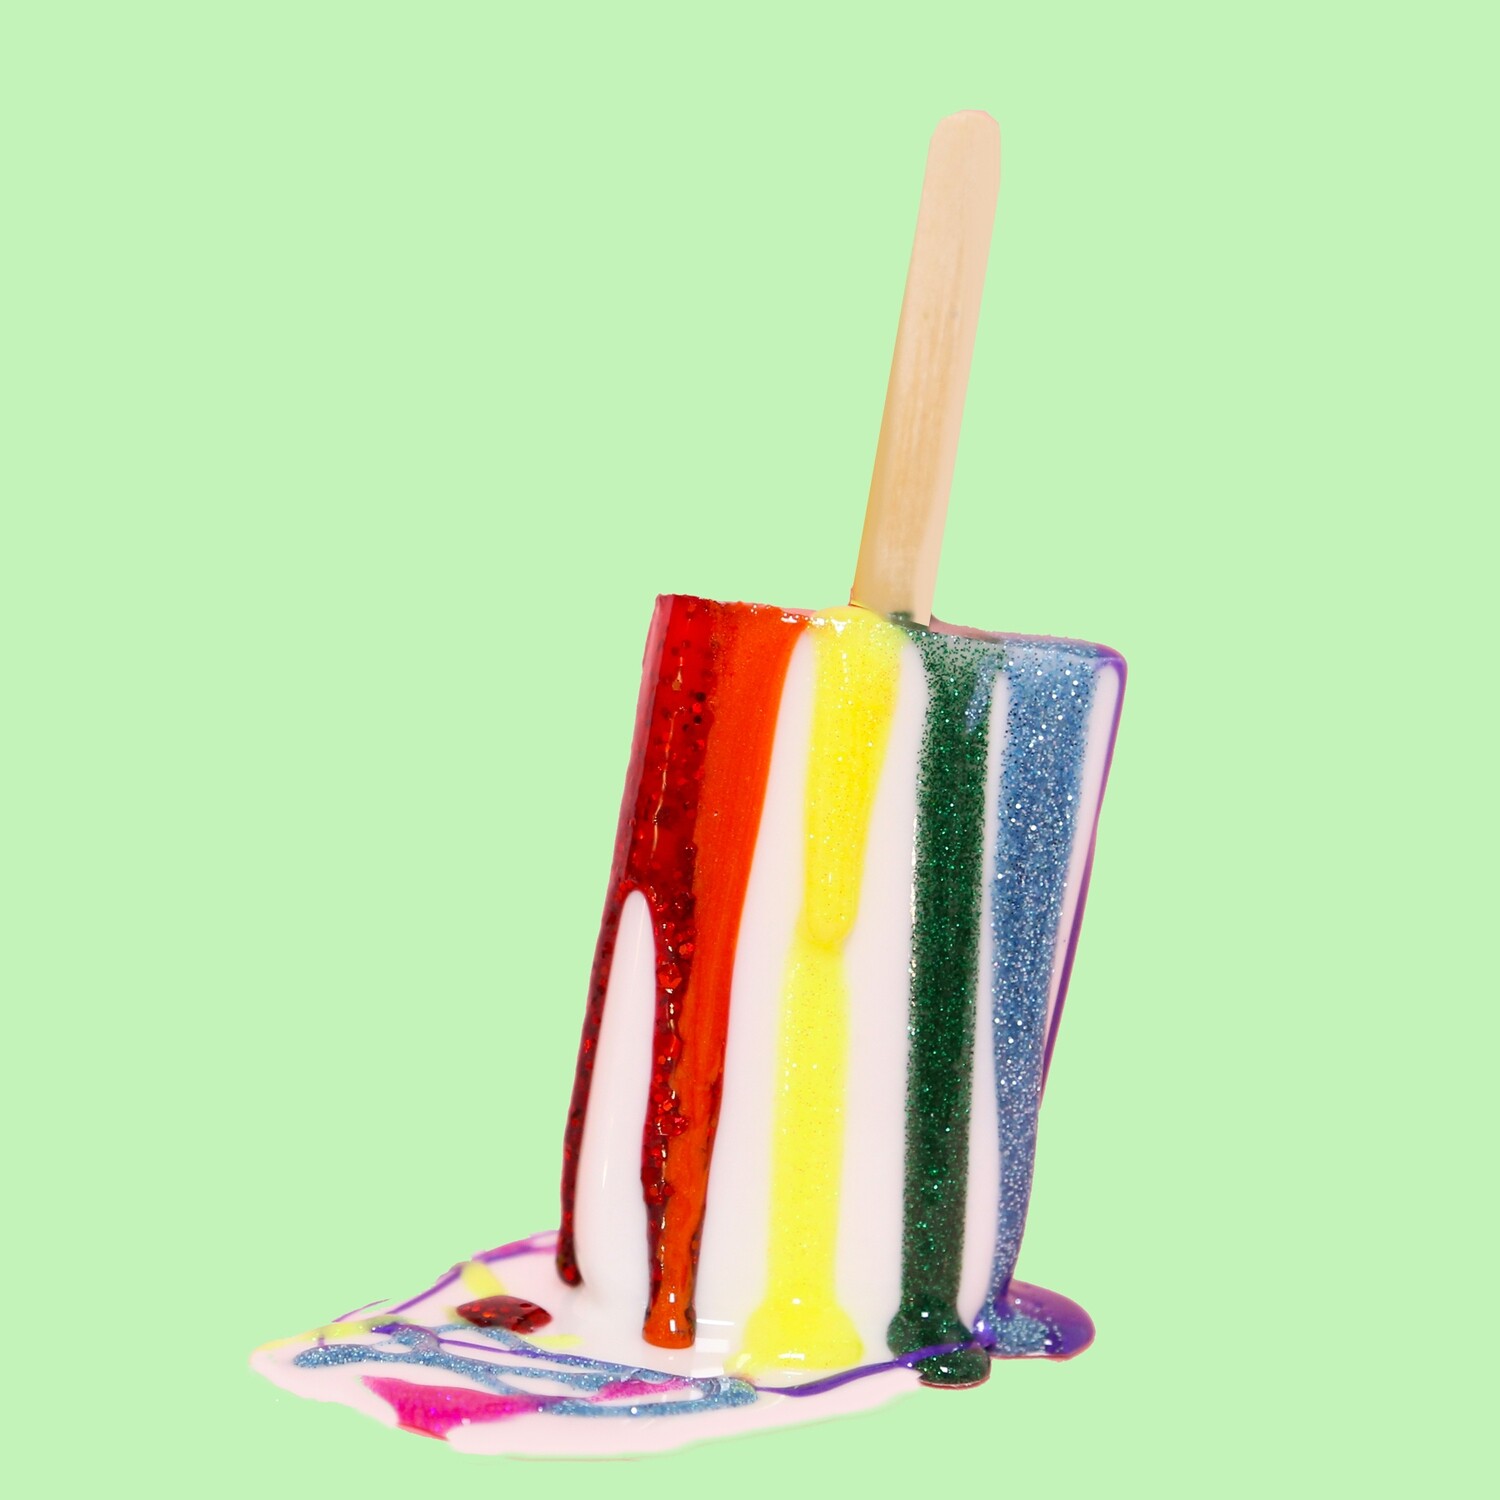 Melting Popsicle Art - Puddle Party - Original Melting Pops